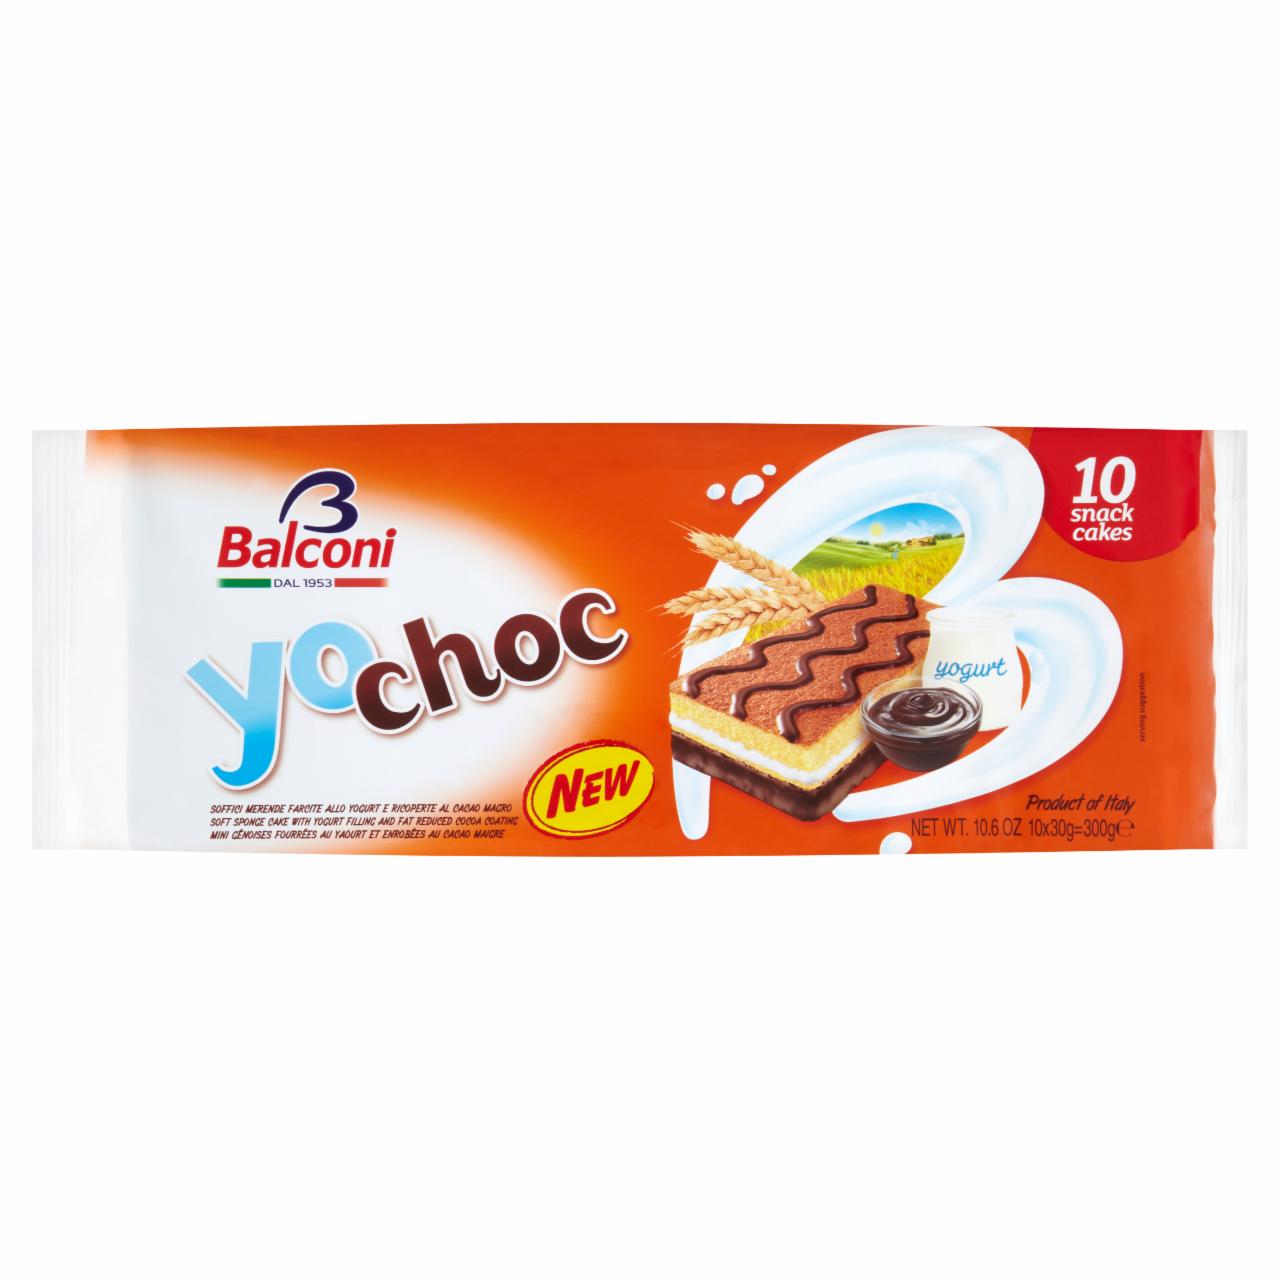 Képek - Balconi Yochoc zsírszegény joghurttal töltött kakaóval bevont sütő- és édesipari termék 300 g